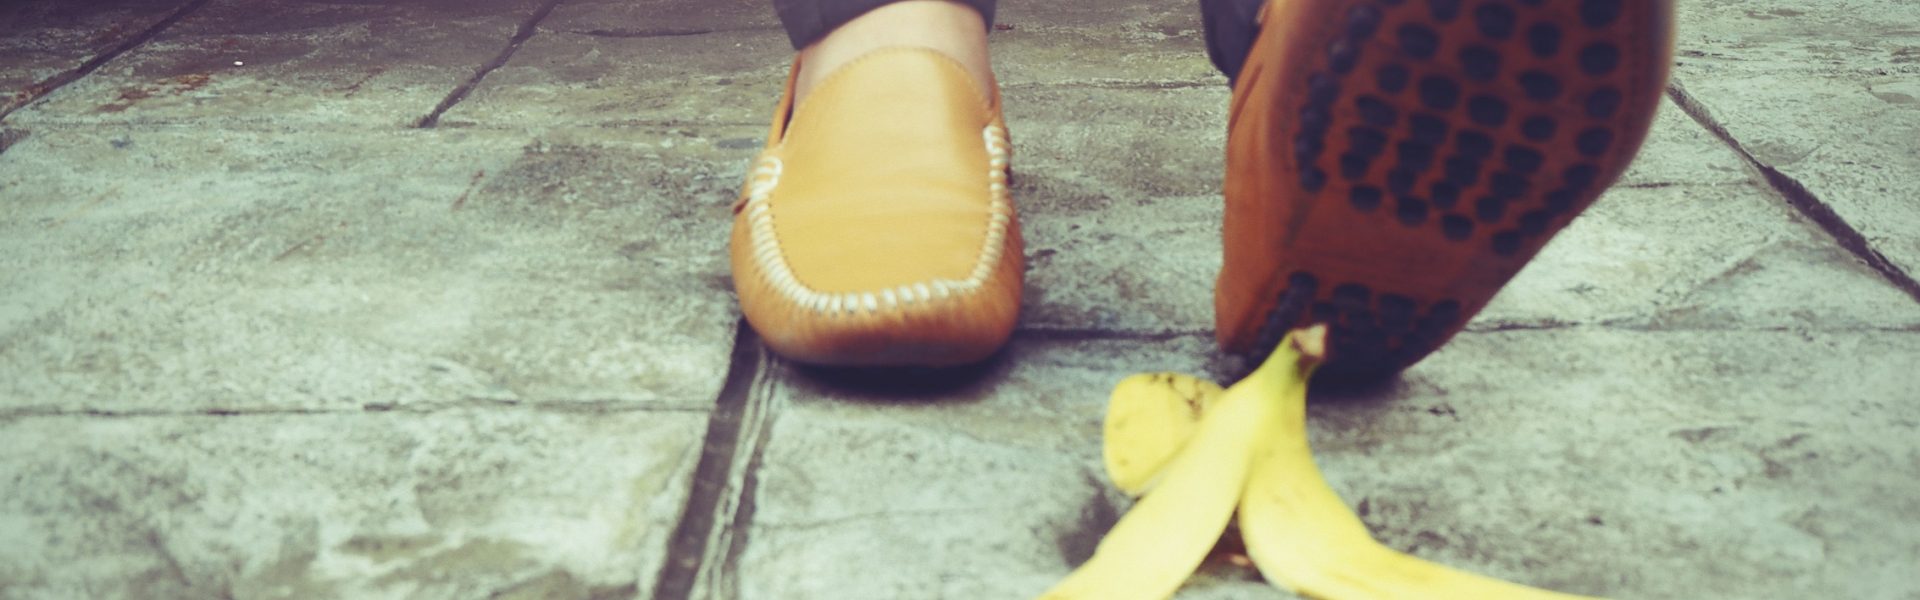 Proč se (ne) kloužeme po banánové slupce?